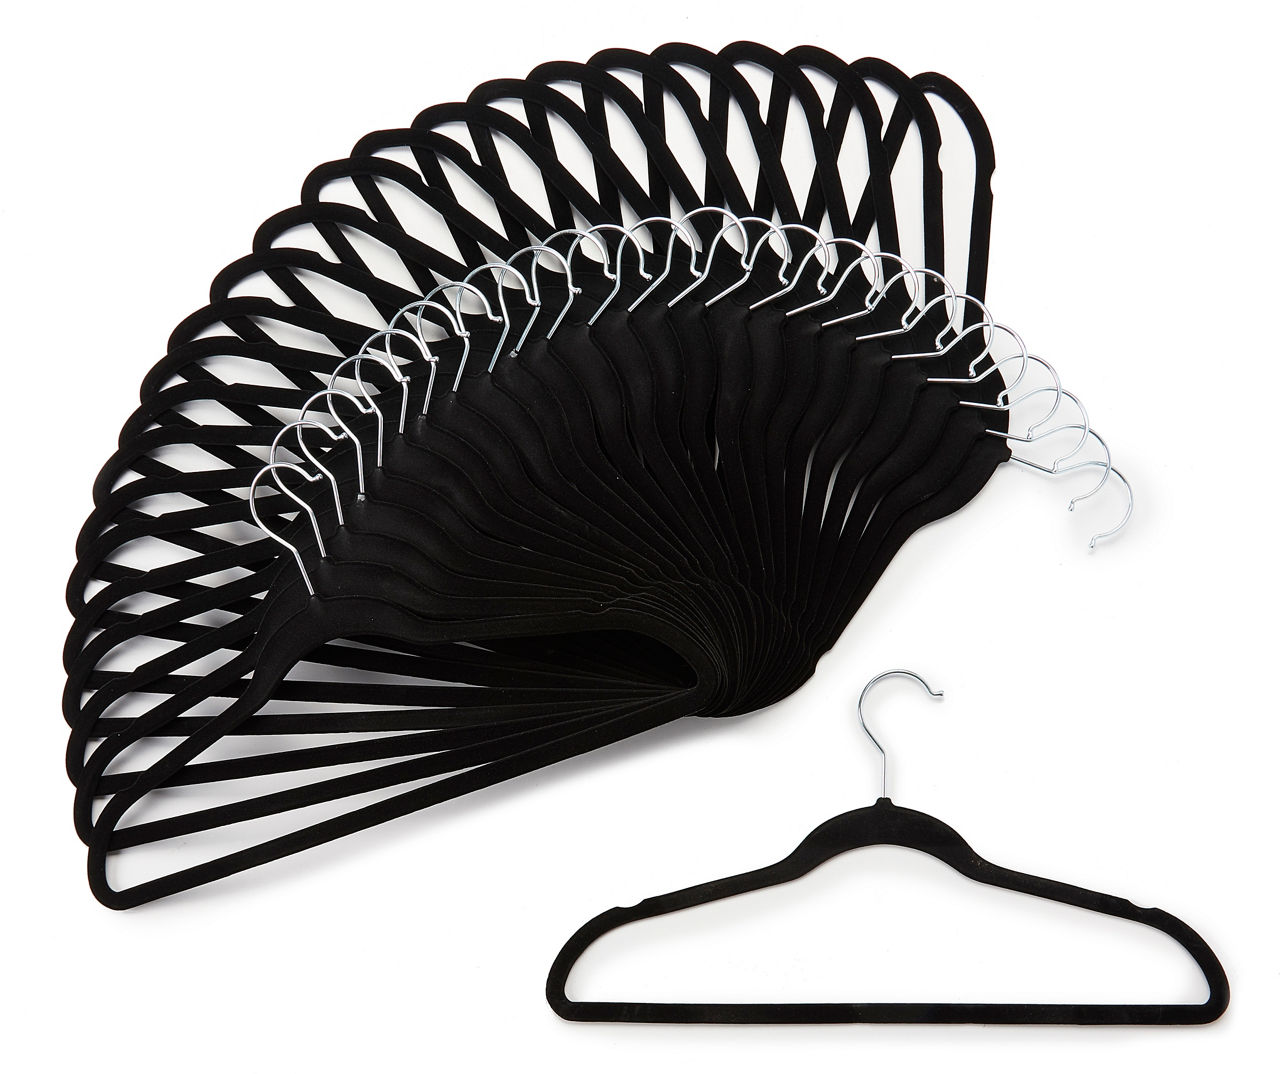 Home Essentials Black Velvet Hangers, 25-Pack